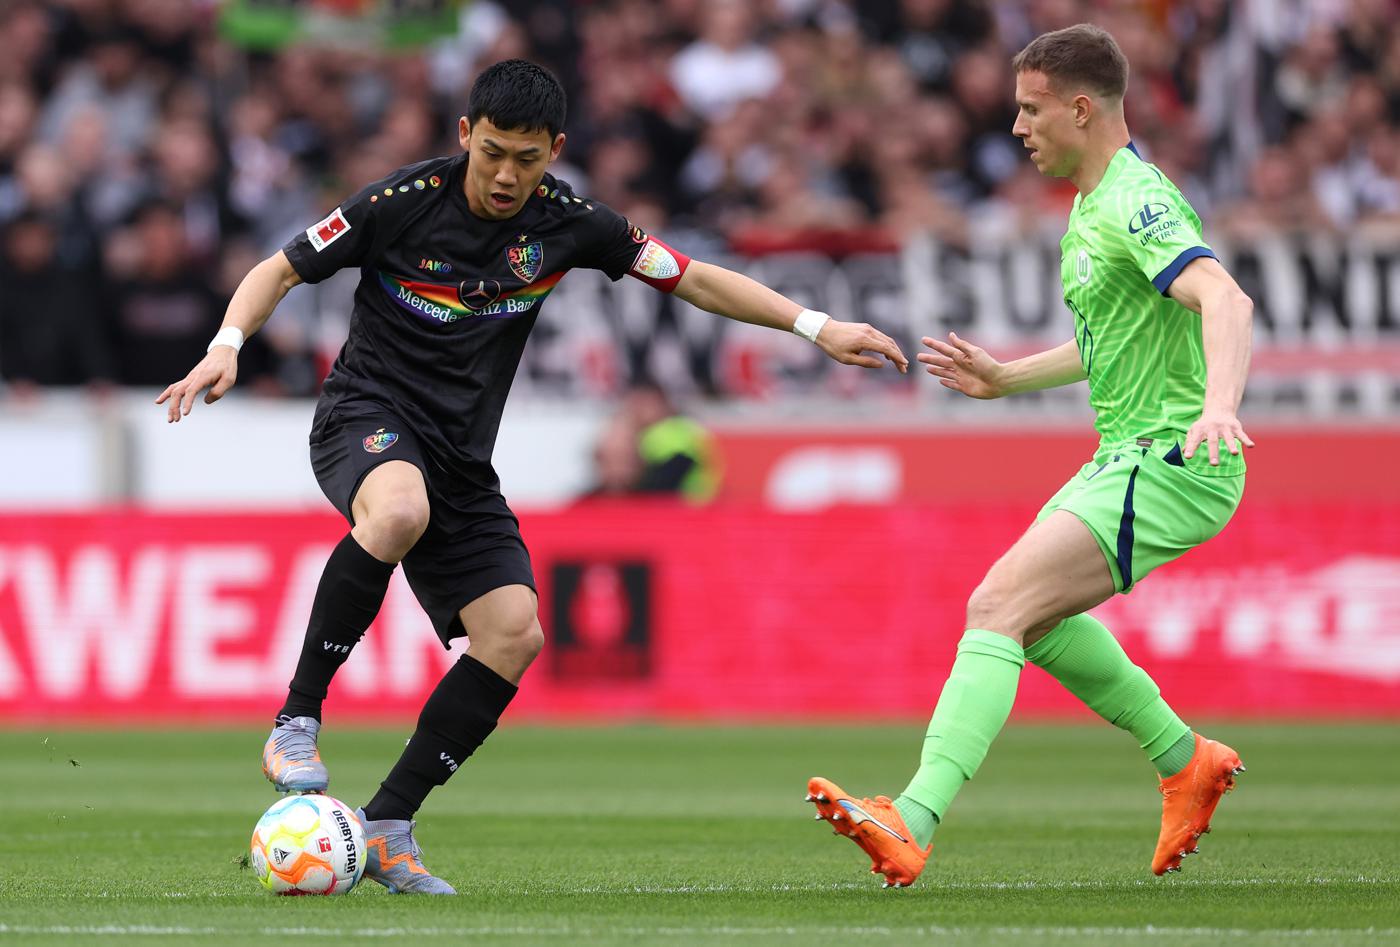 Stuttgart - Wolfsburg - 0:1. German Championship, 25th round. Match review, statistics.